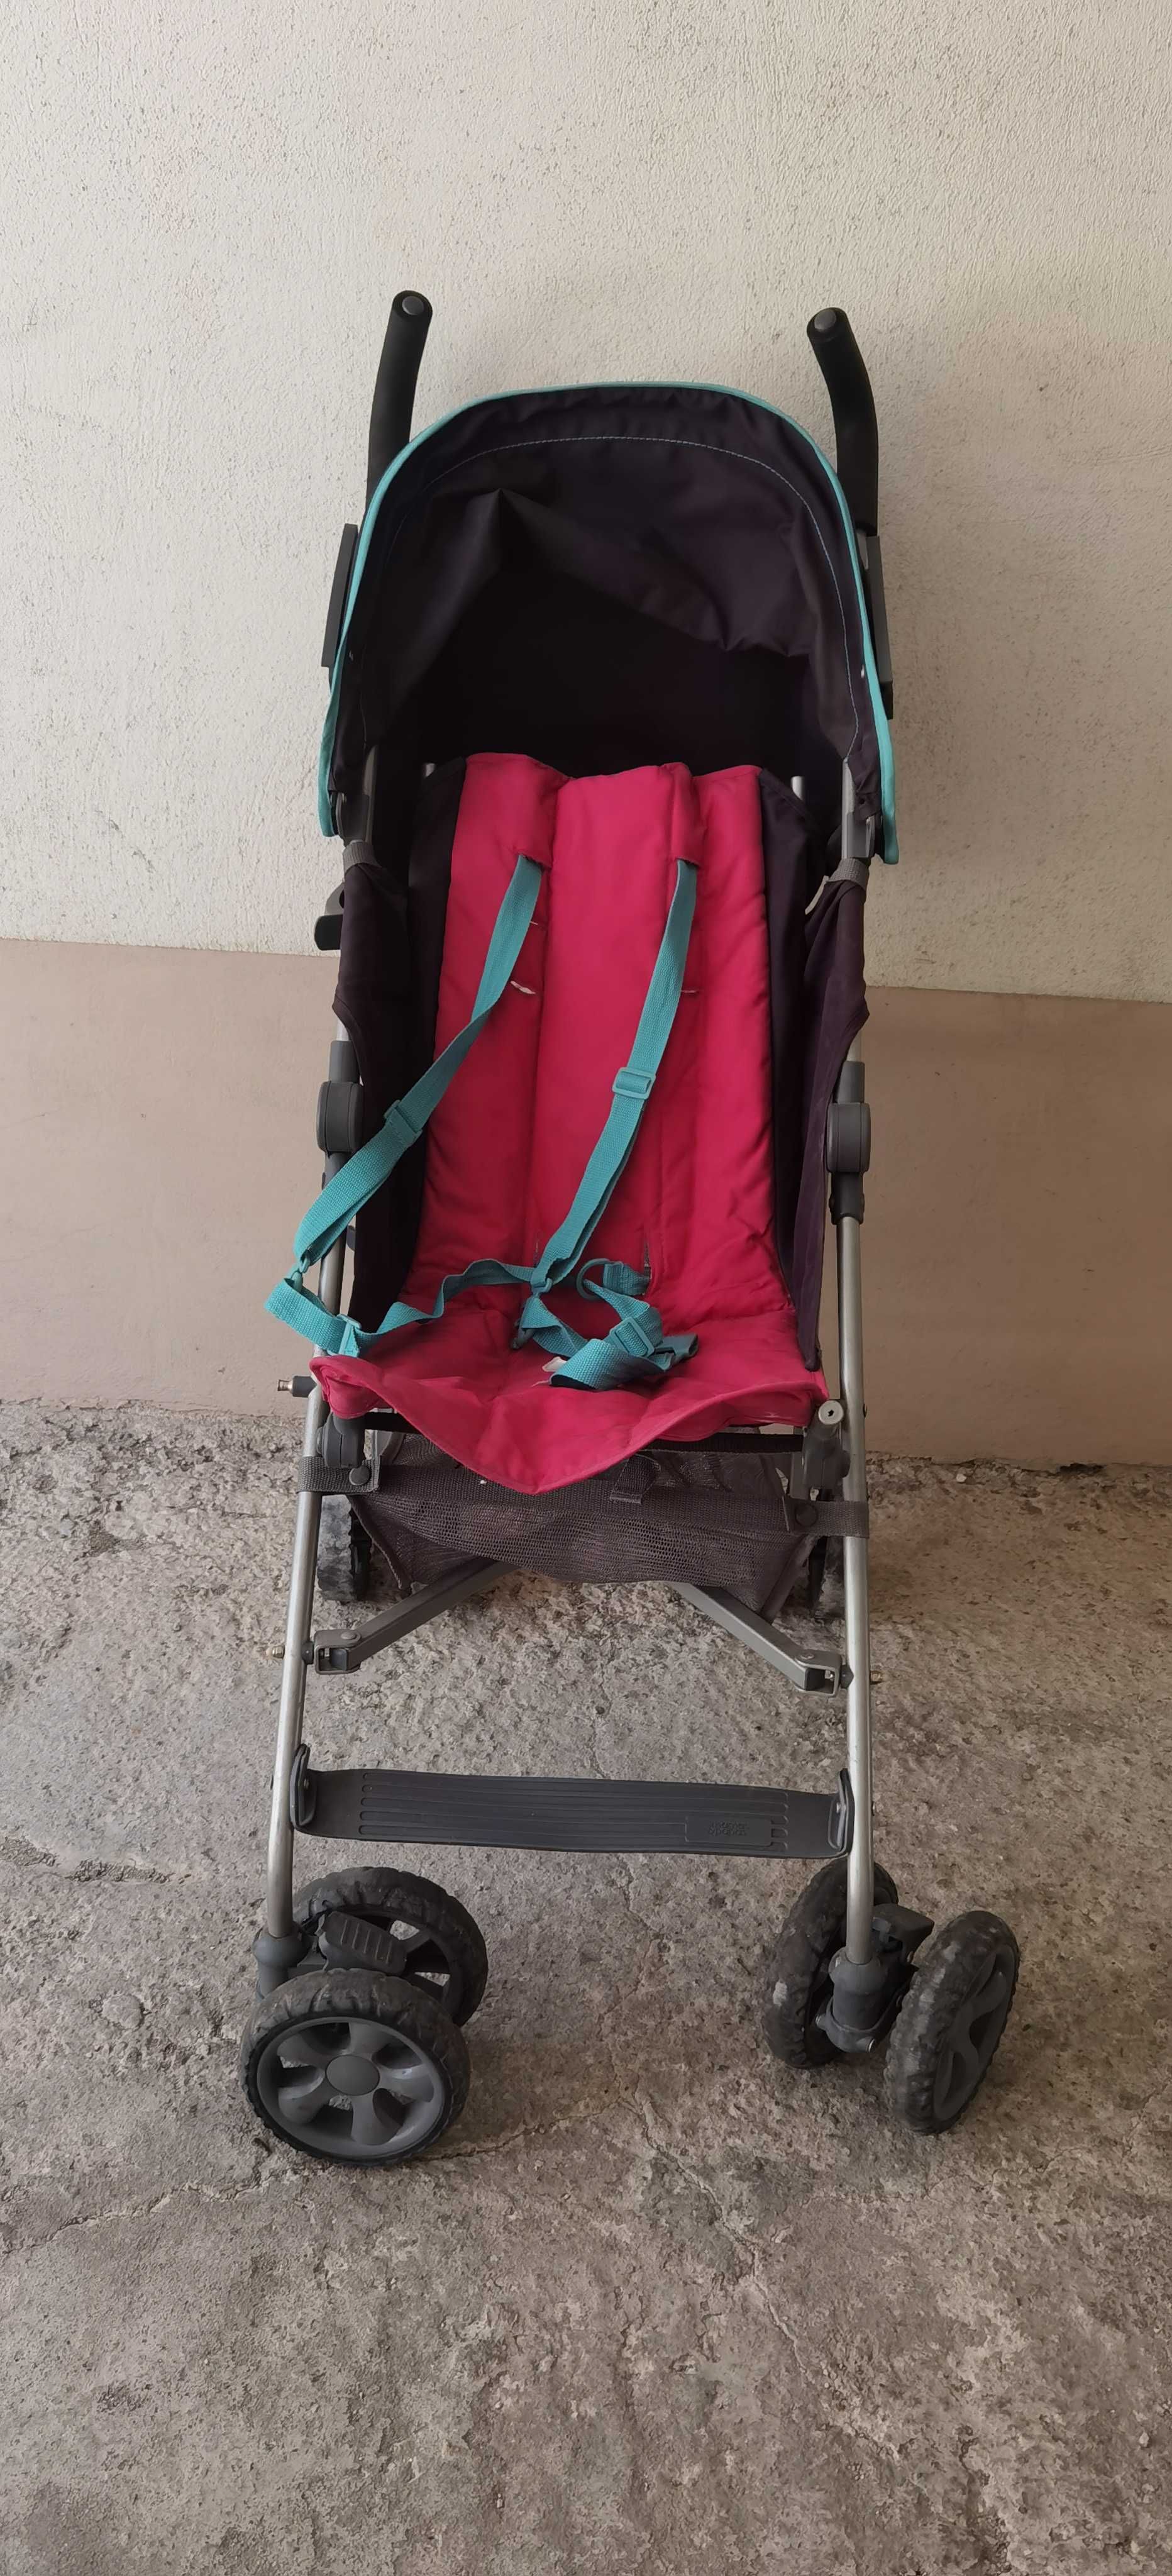 Лятна детска количка MAMAS & PAPAS